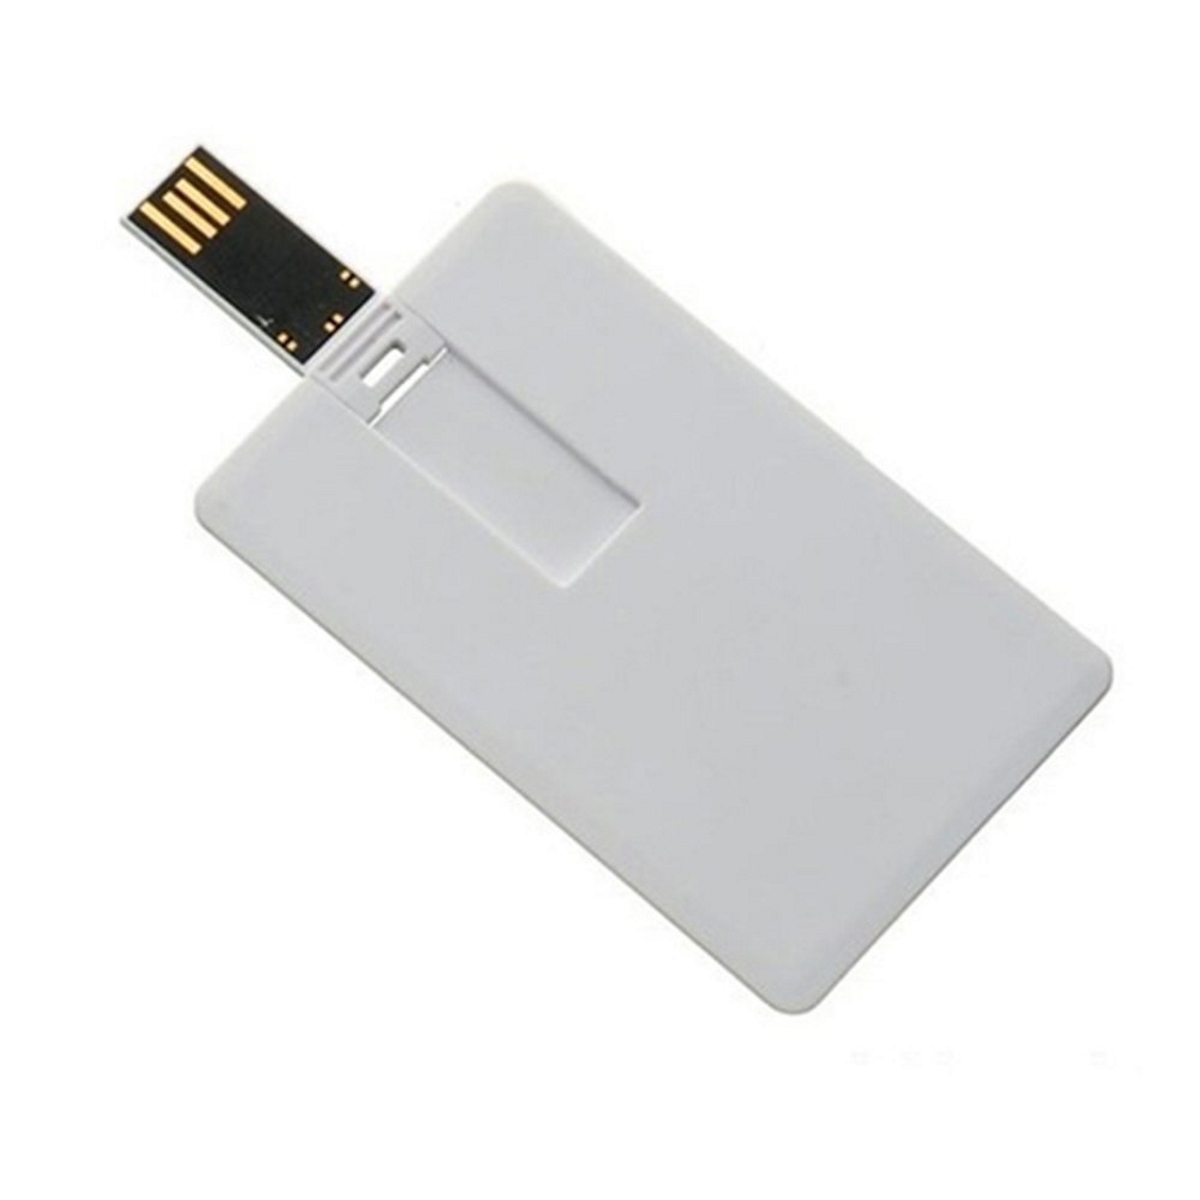 USB GERMANY Kreditkarte ® USB-Stick GB) (Weiss, 4